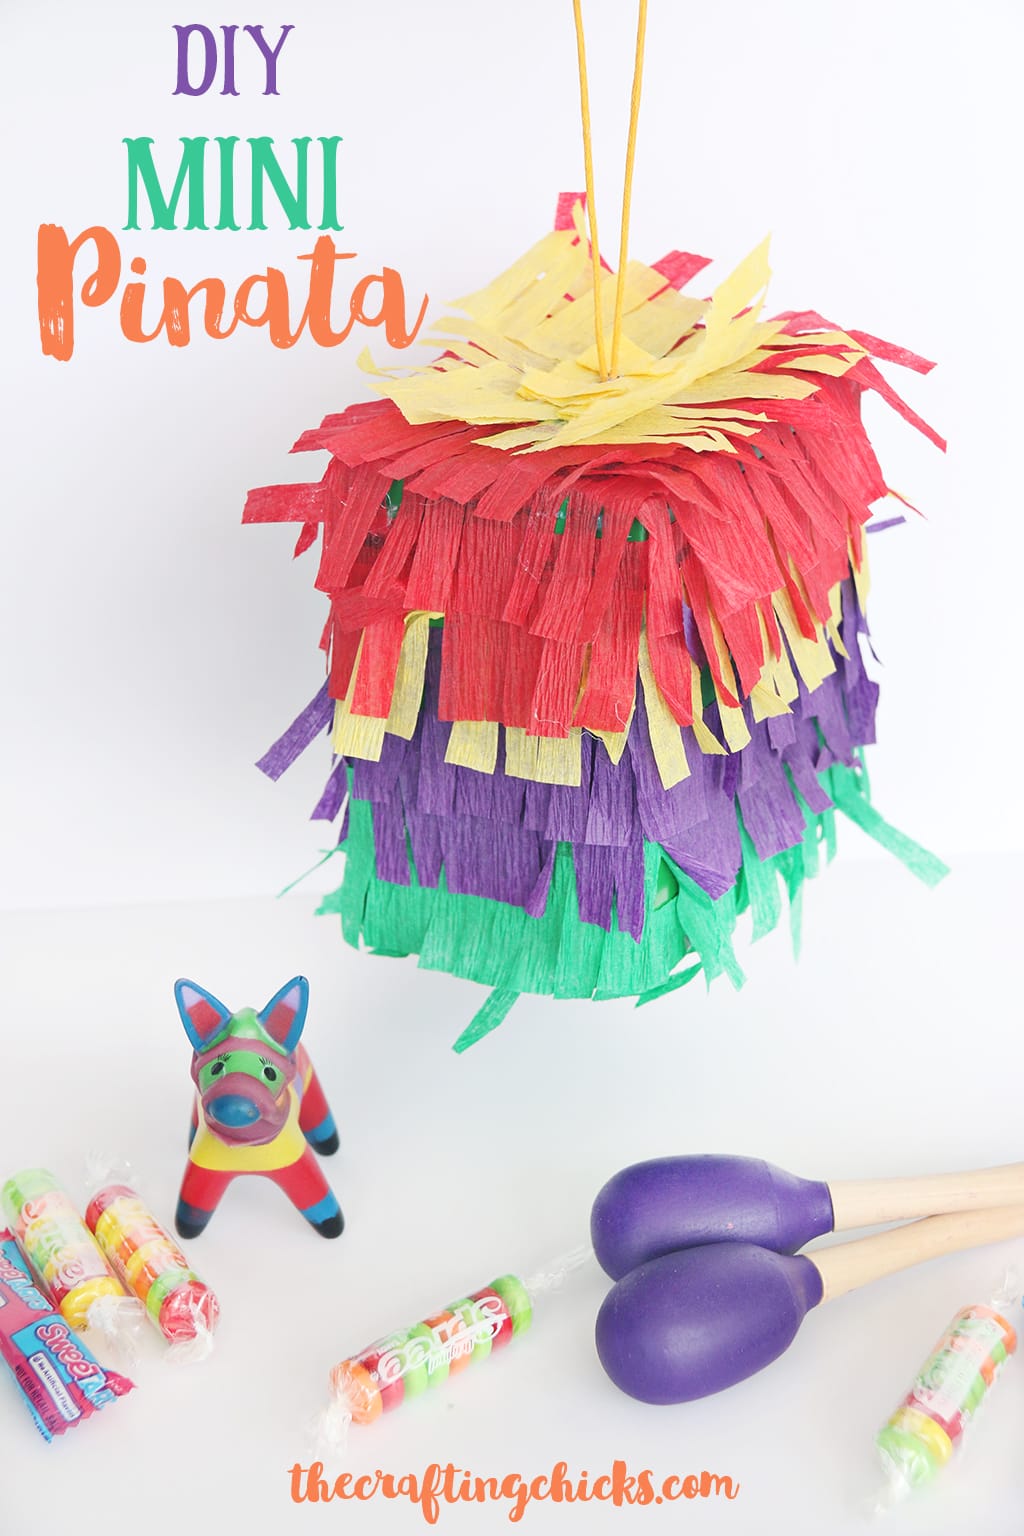 DIY Mini Piñata